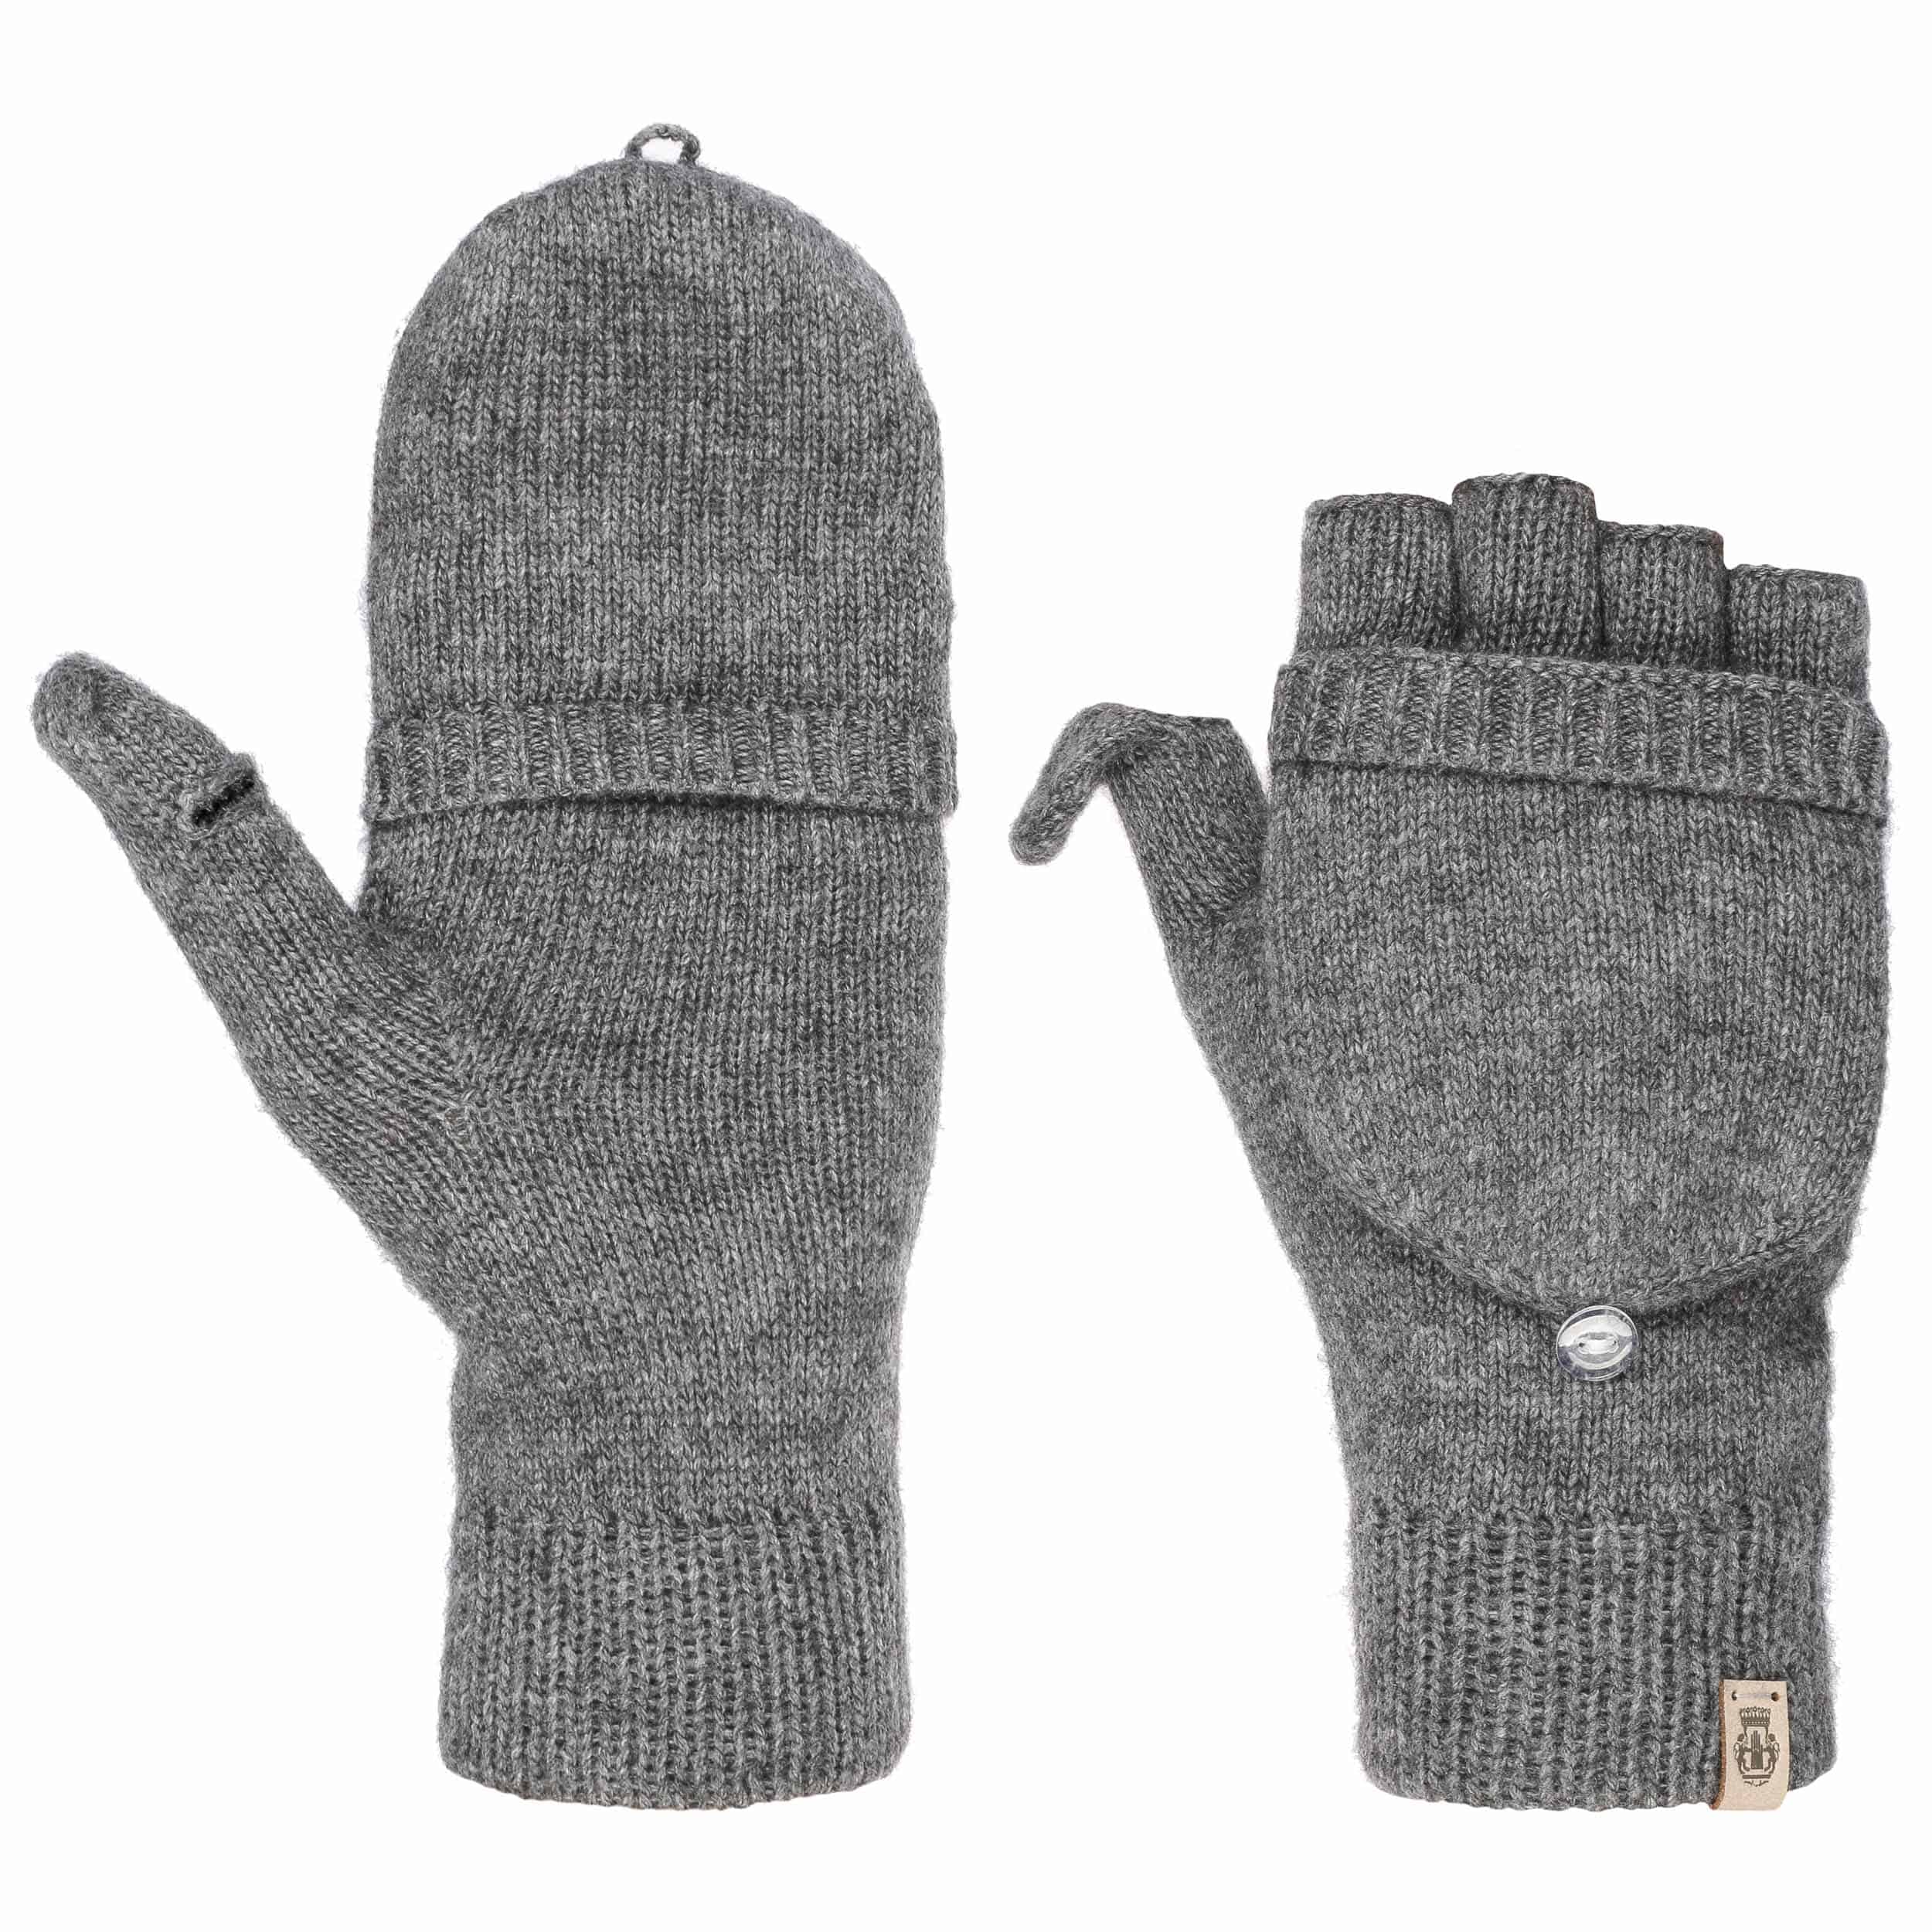 merino wool fingerless gloves